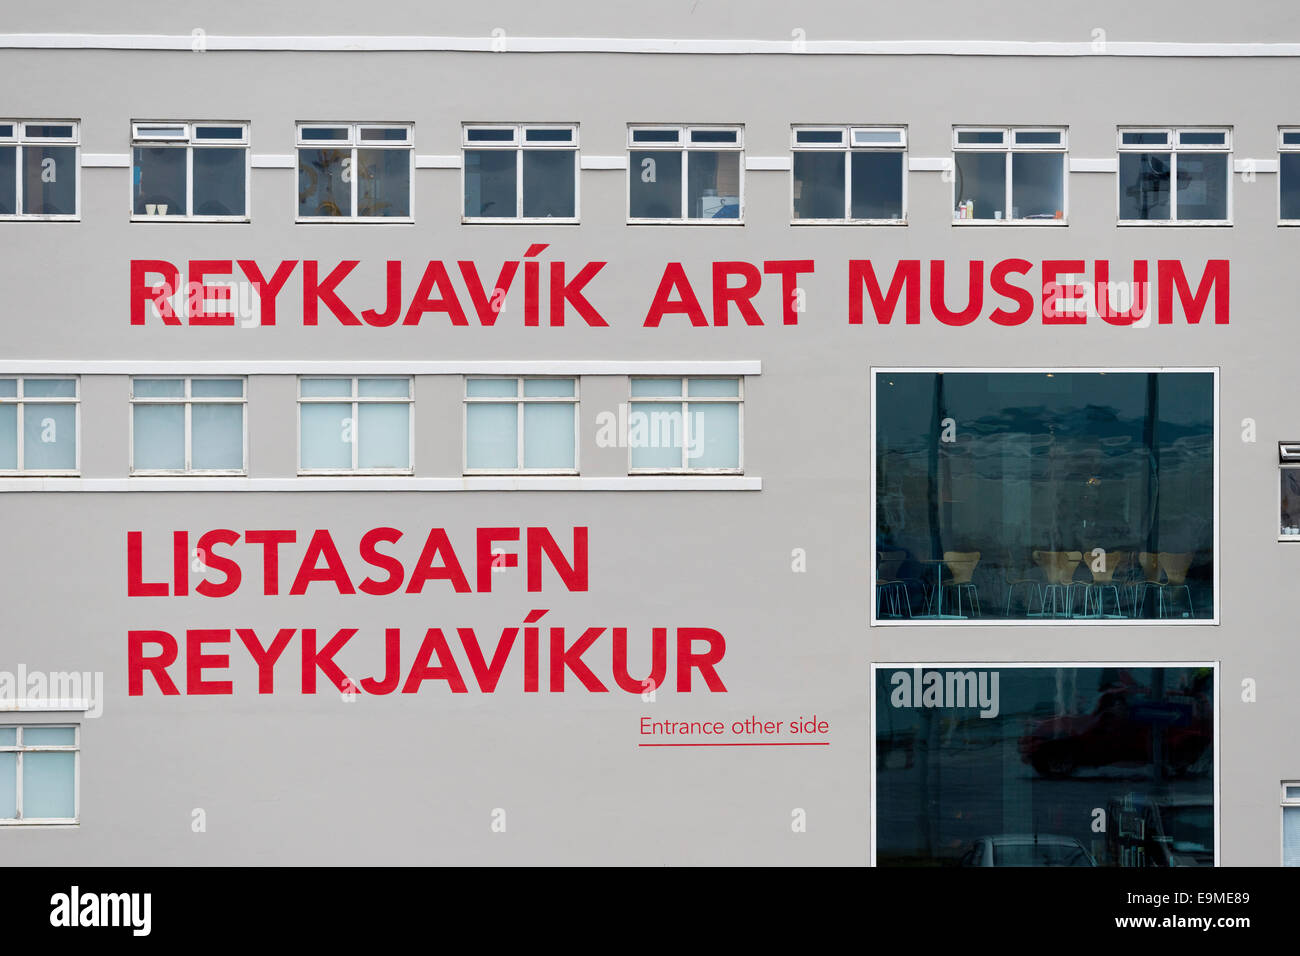 Musée d'Art de Reykjavík, Listasafn Reykjavíkur, Reykjavik, Islande Banque D'Images